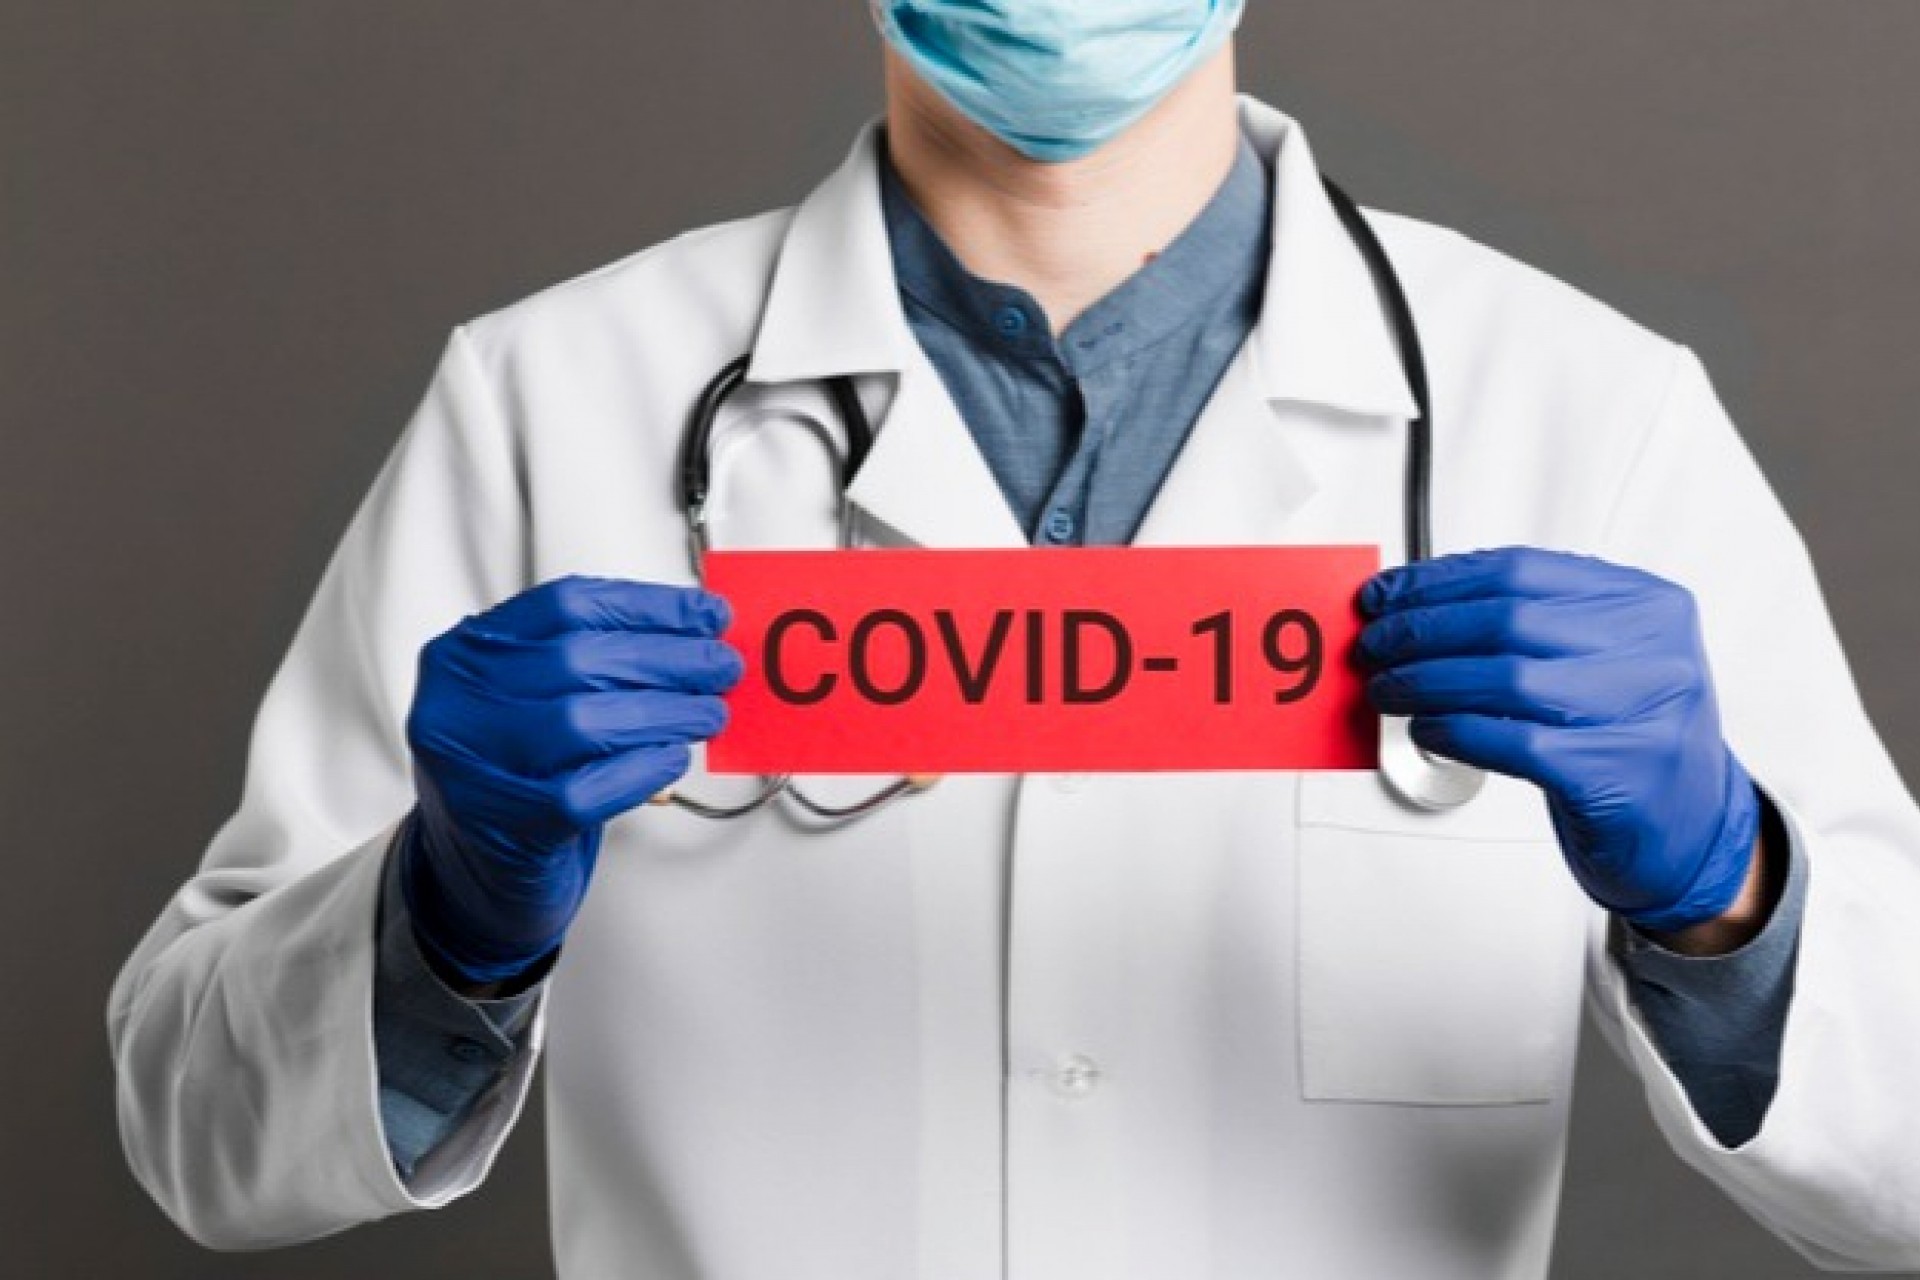 Médico de Missal afirma que perfil de pacientes acometidos por Covid-19 é de pessoas mais jovens